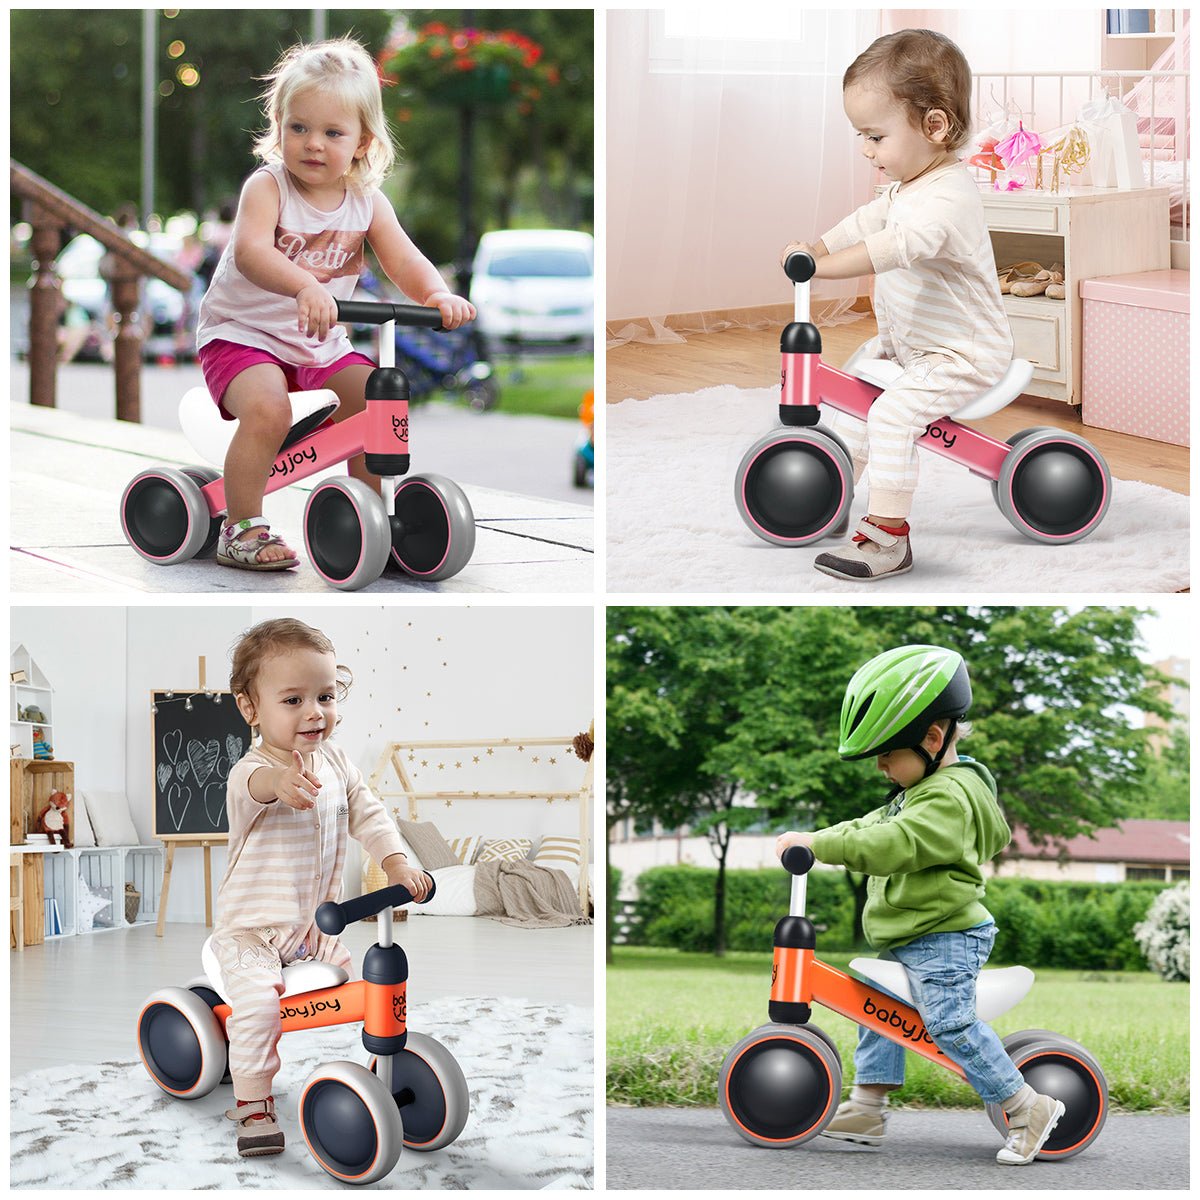 Wheels of Exploration: Kids Orange Balance Training Bike with 4 Wheels